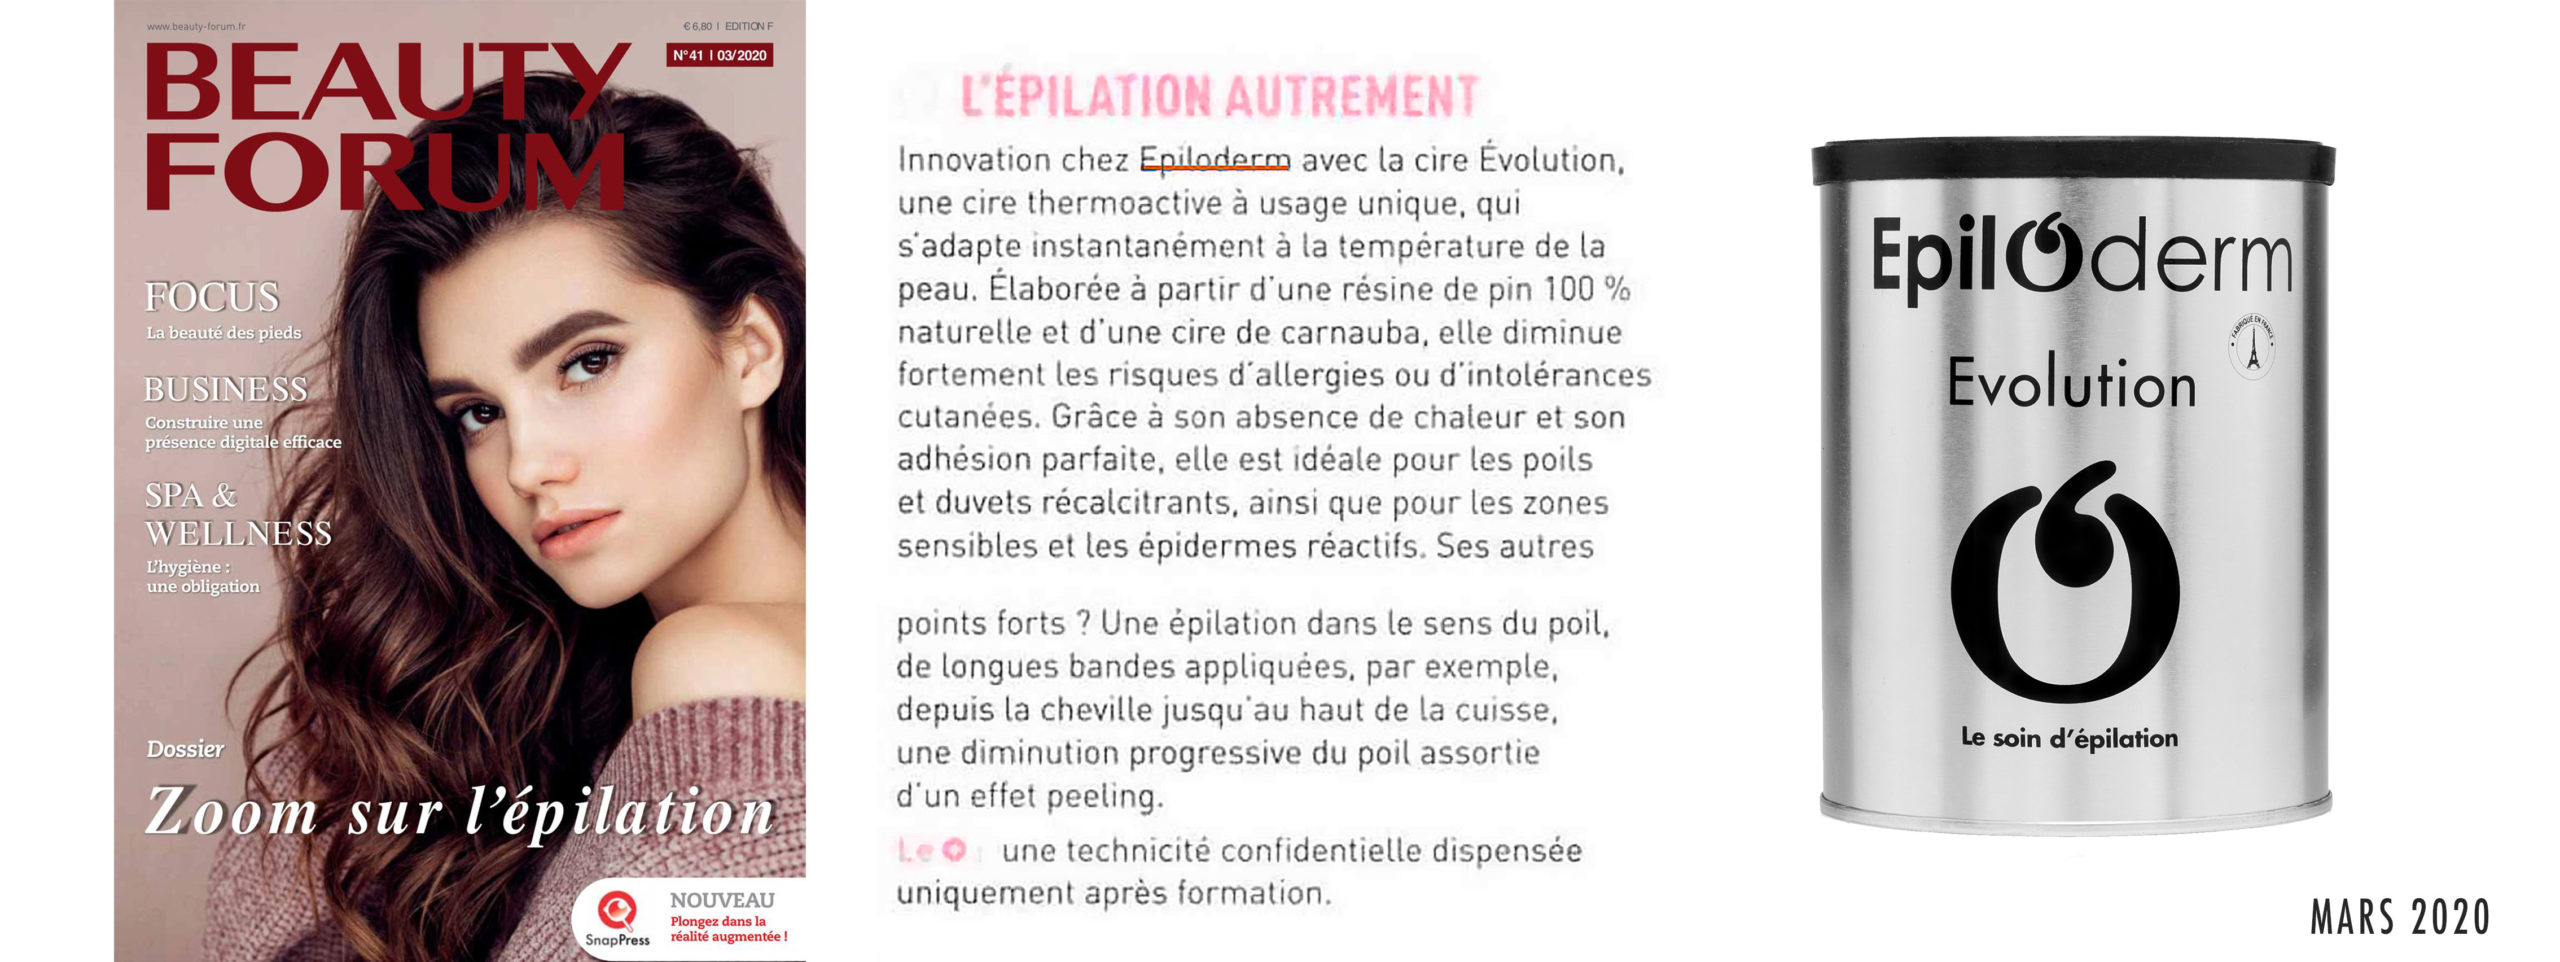 epilation_innovation_évolution_cire_poils